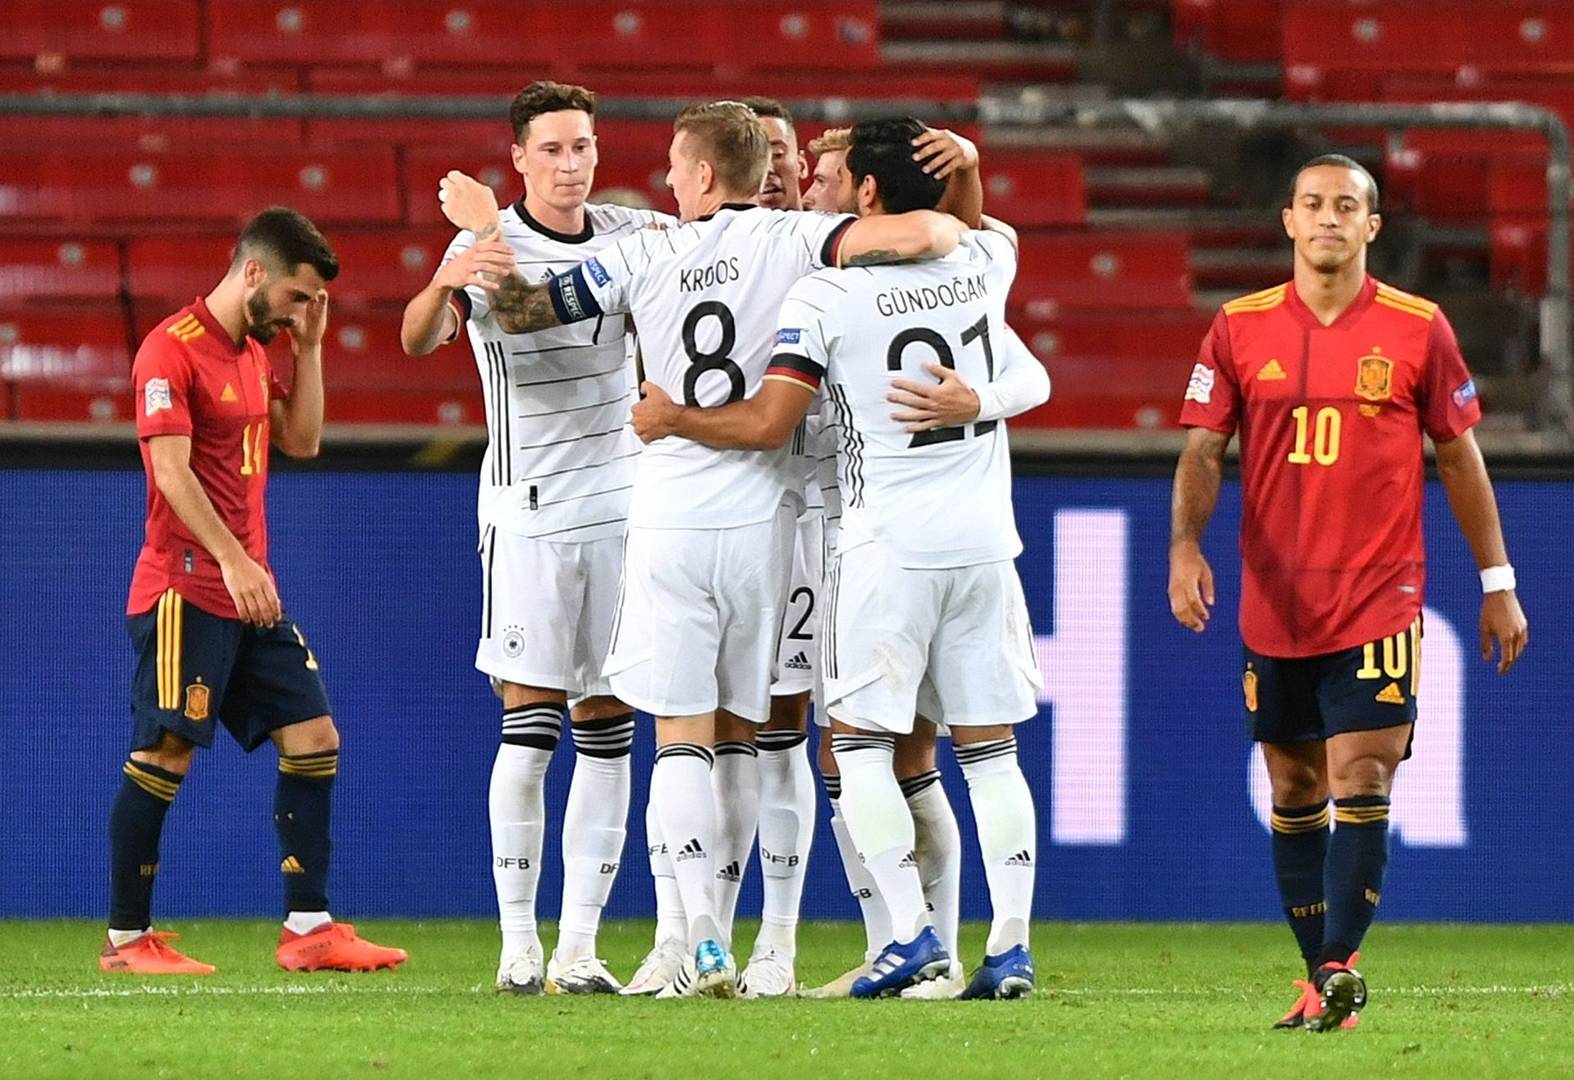 Alemania es el último rival que la selección española debe superar para llevarse el primer puesto / Libertad Digital